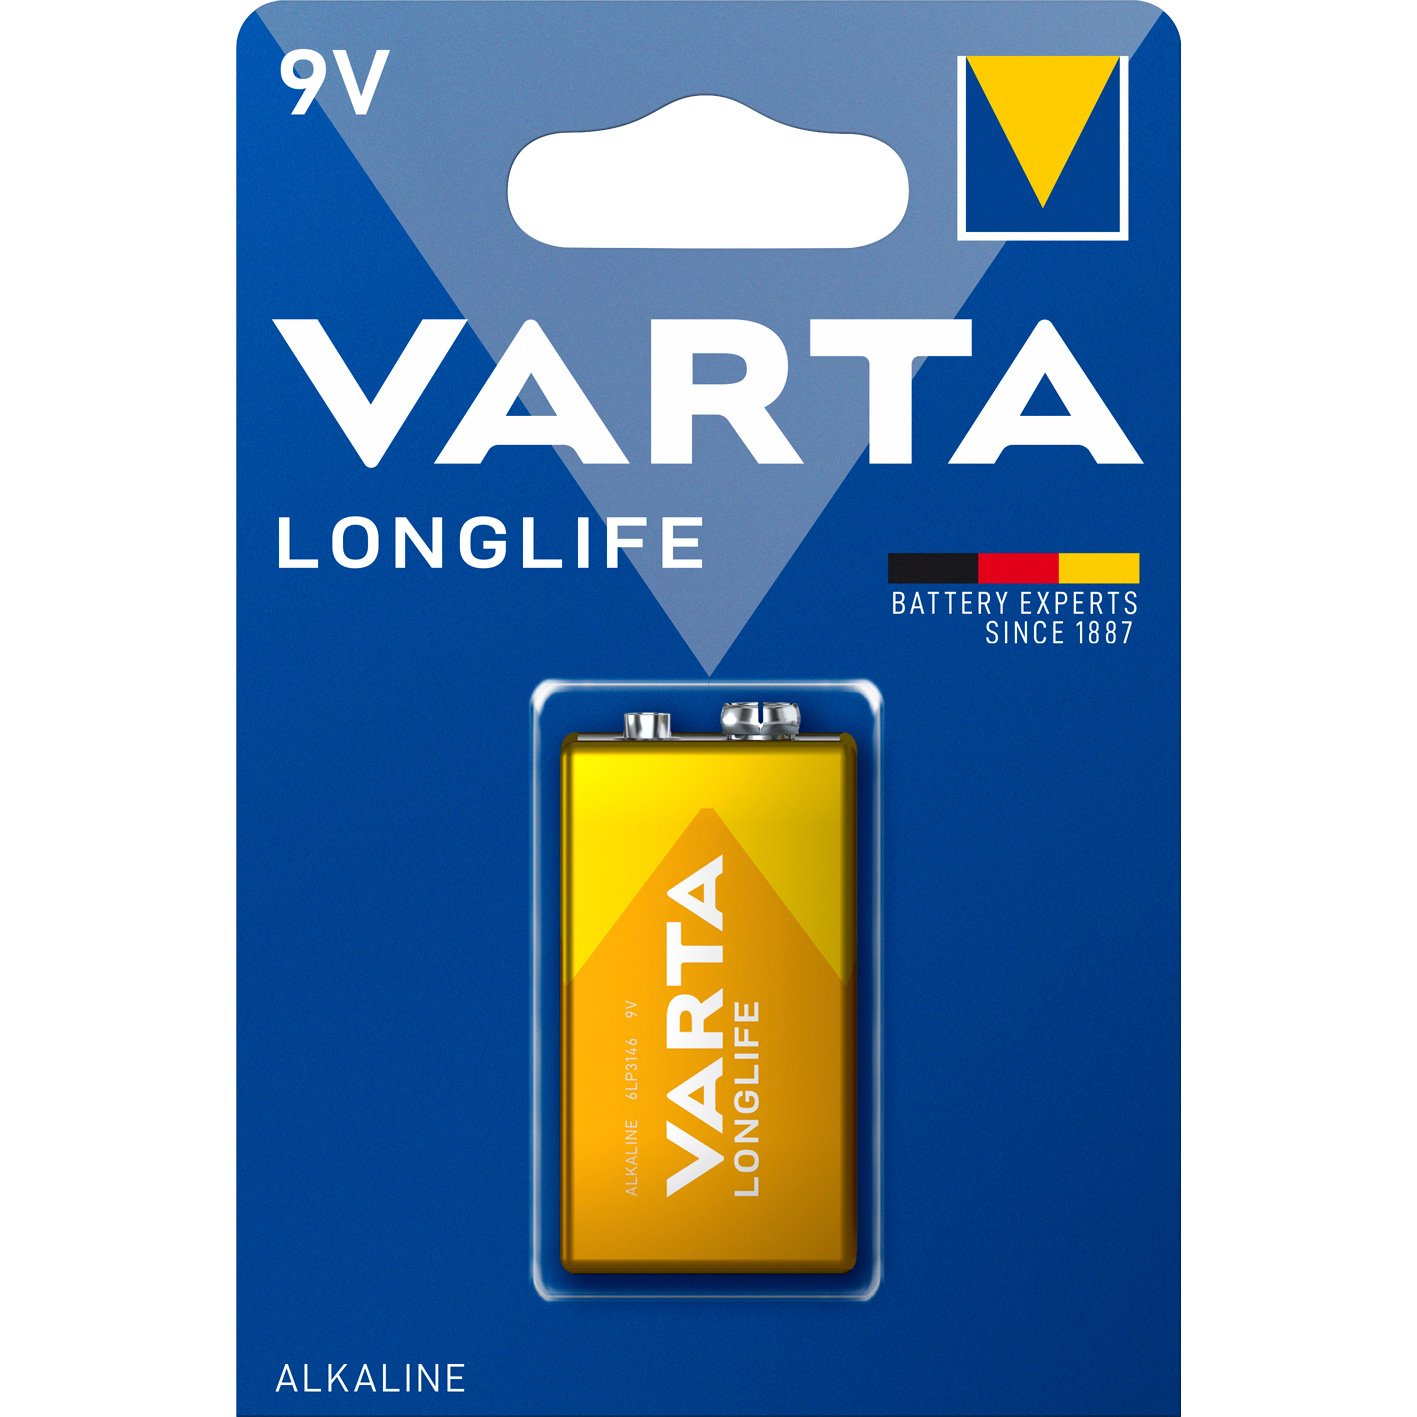 VARTA LongLife batteri 9V/6LP3146 9 v 1 stk